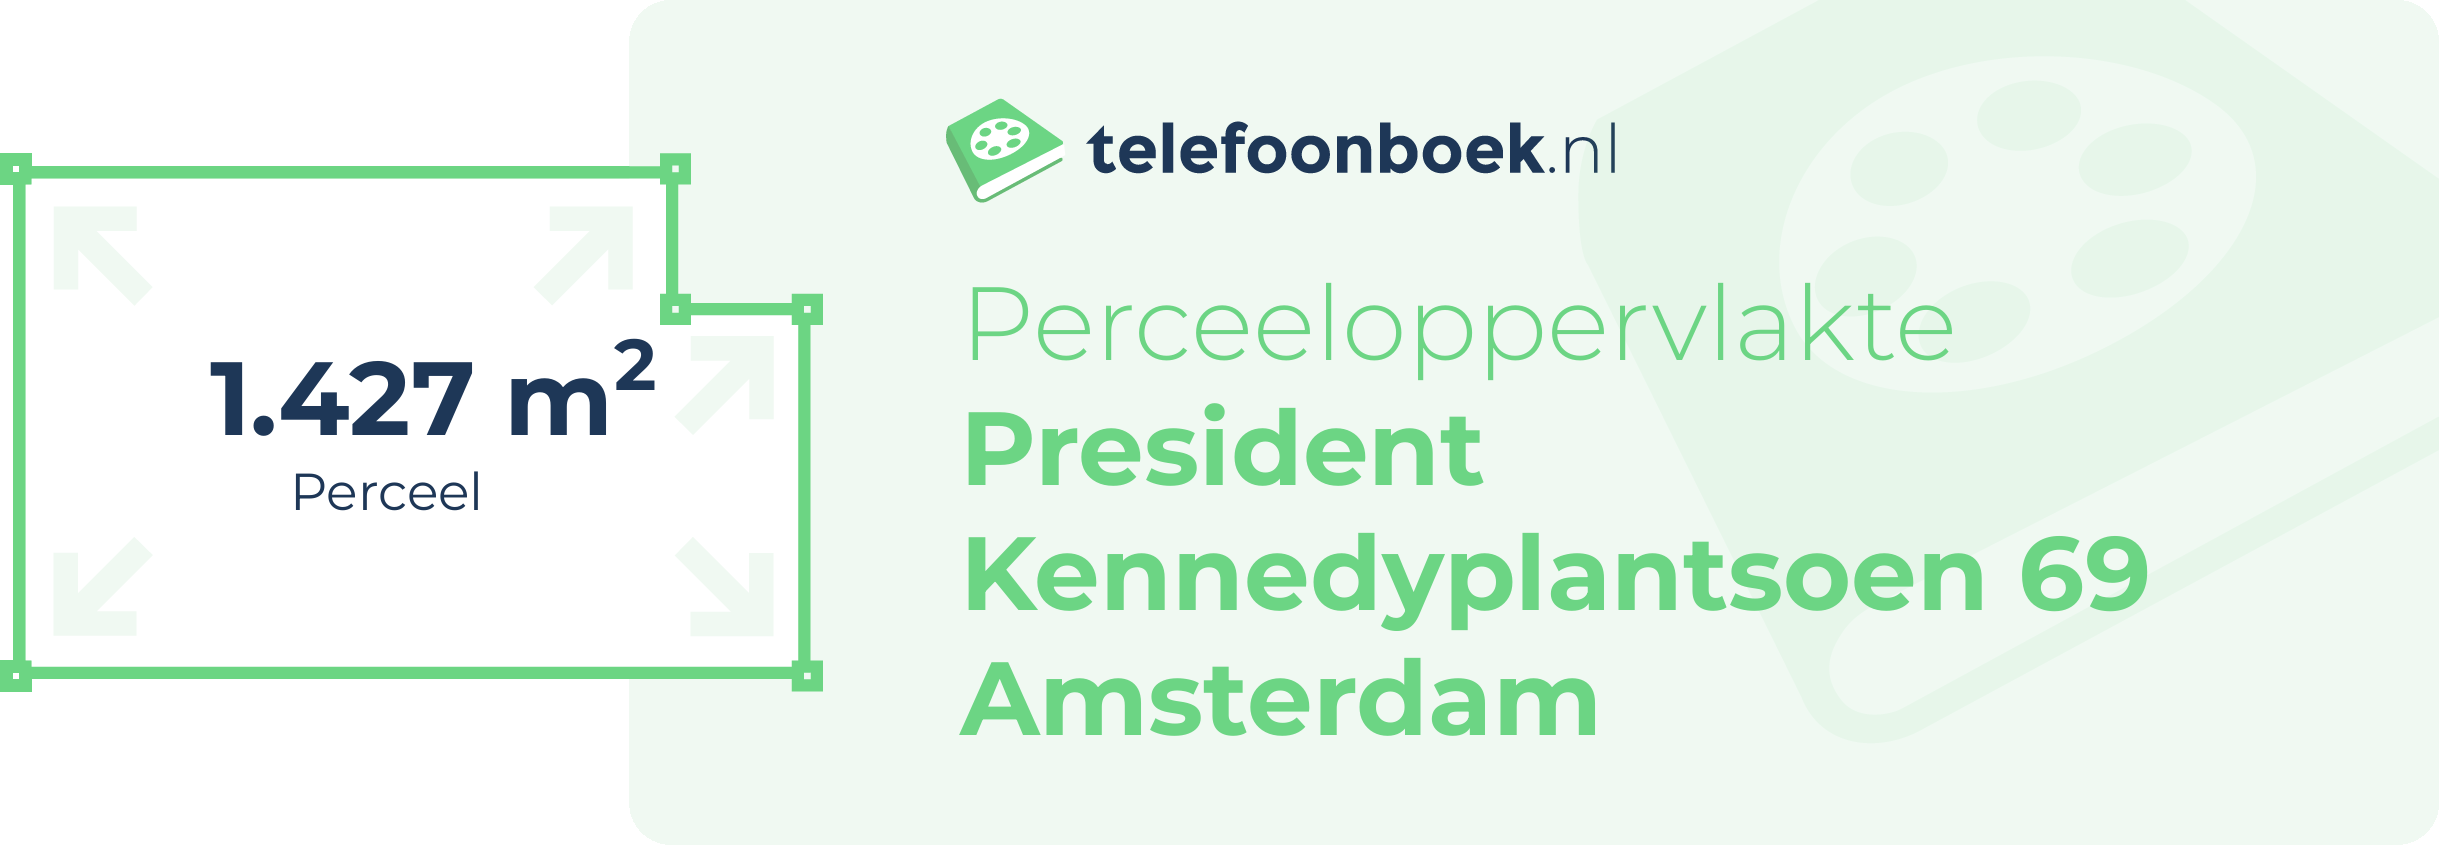 Perceeloppervlakte President Kennedyplantsoen 69 Amsterdam